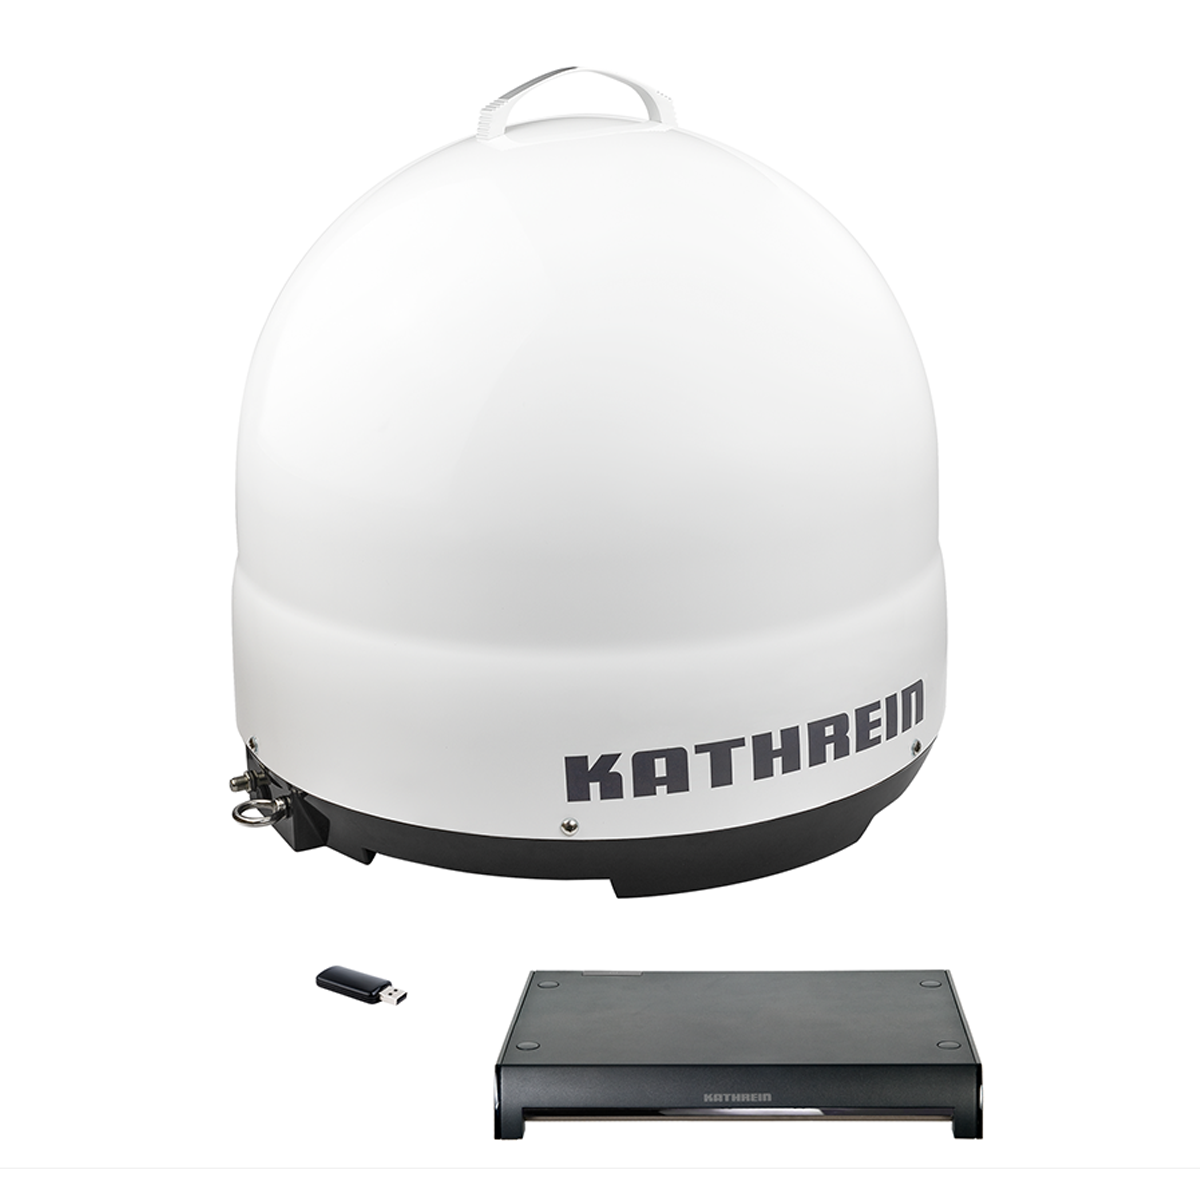 KATHREIN CAP 500 M Single (450 Antenne Universal) Vollautomatische mm, Plus Sat